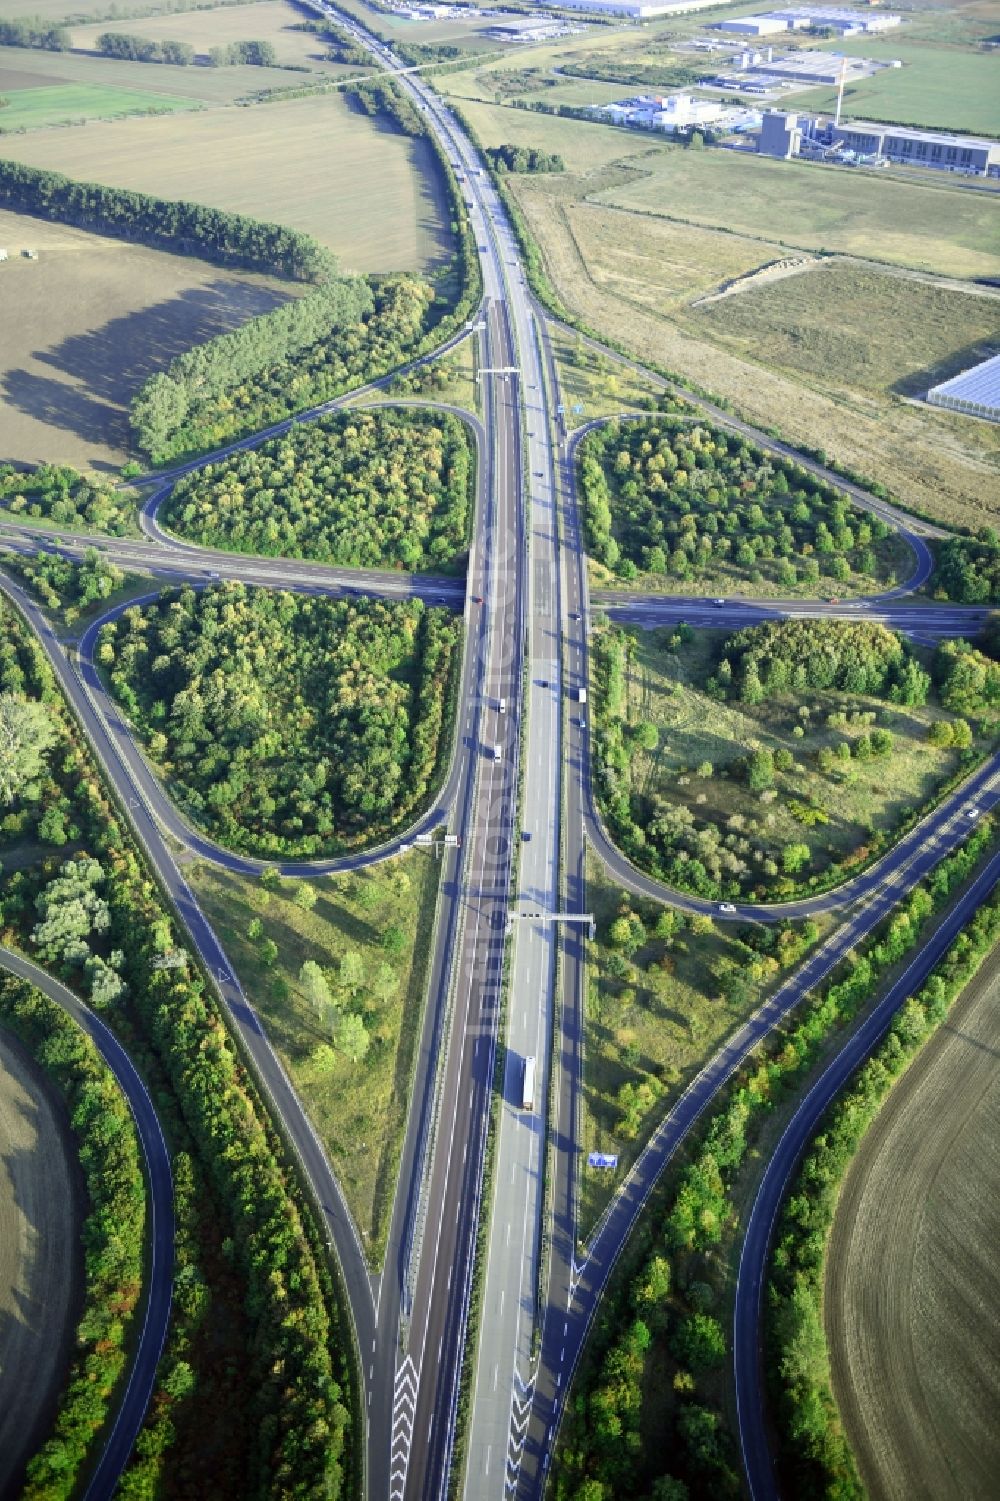 Luftbild Magdeburg - Kleeblattförmige Verkehrsführung am Autobahnkreuz der BAB A14 zur B81 in Magdeburg im Bundesland Sachsen-Anhalt, Deutschland